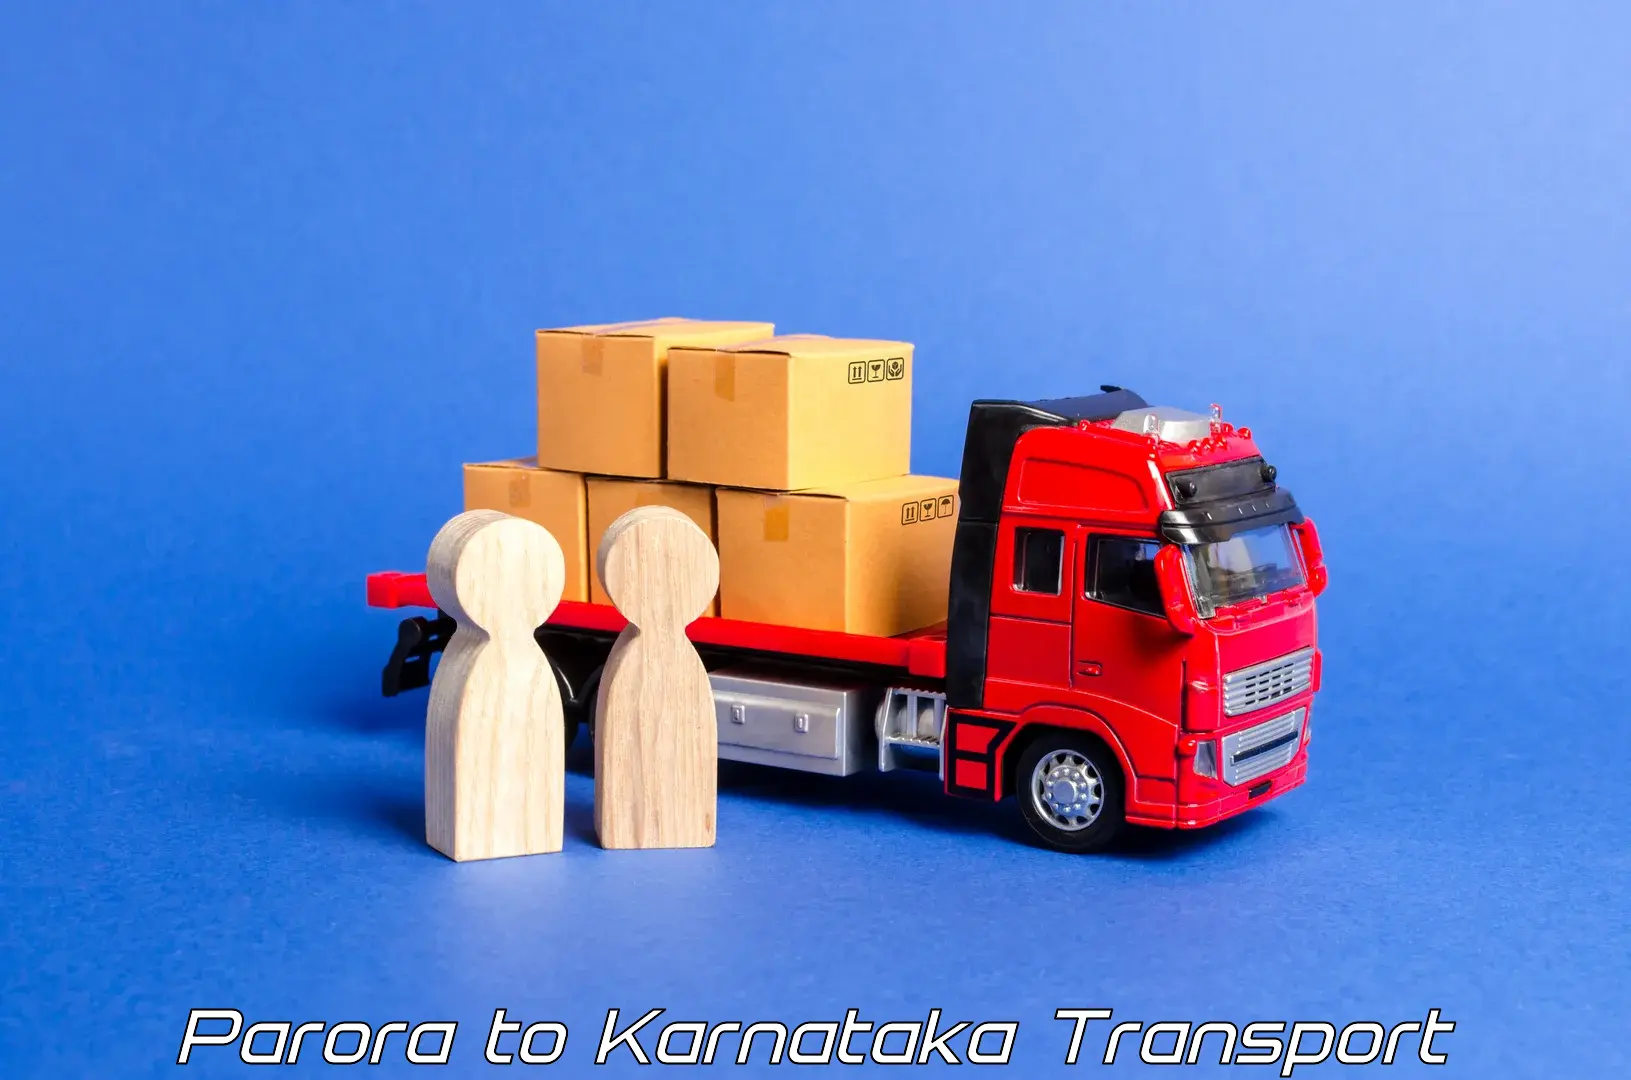 India truck logistics services Parora to Bengaluru